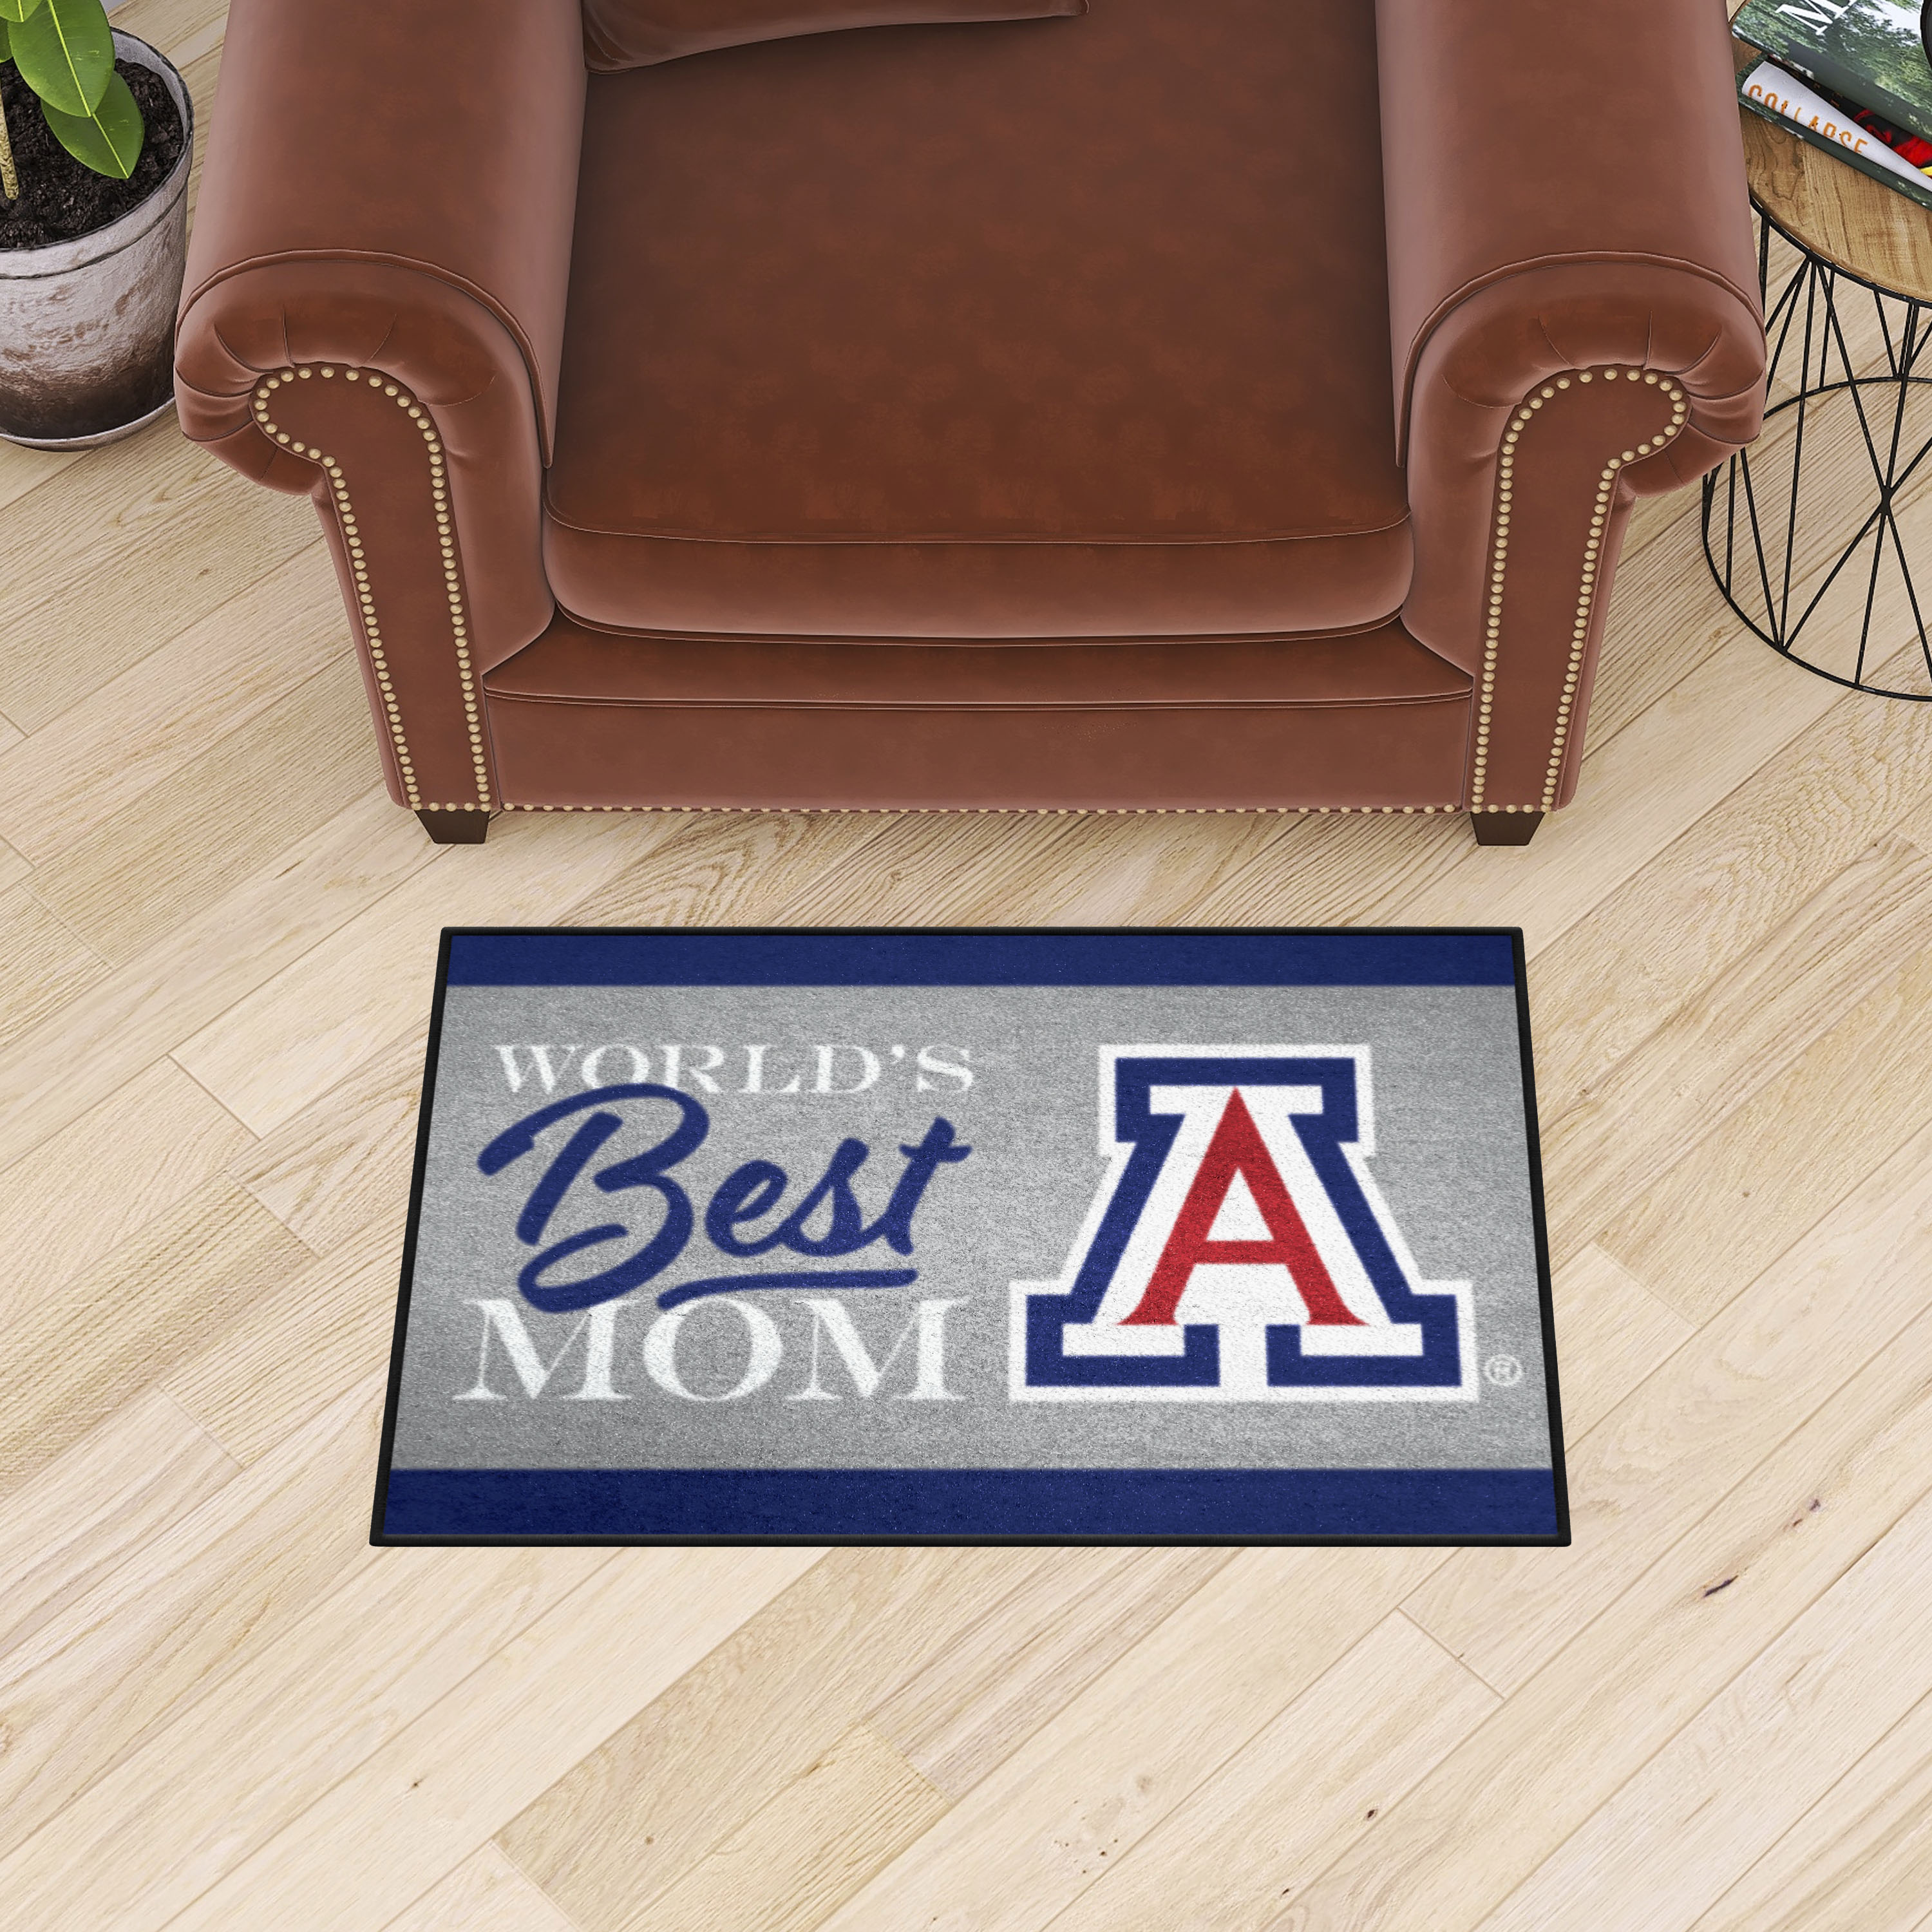 Arizona Wildcats World's Best Mom Starter Doormat - 19 x 30